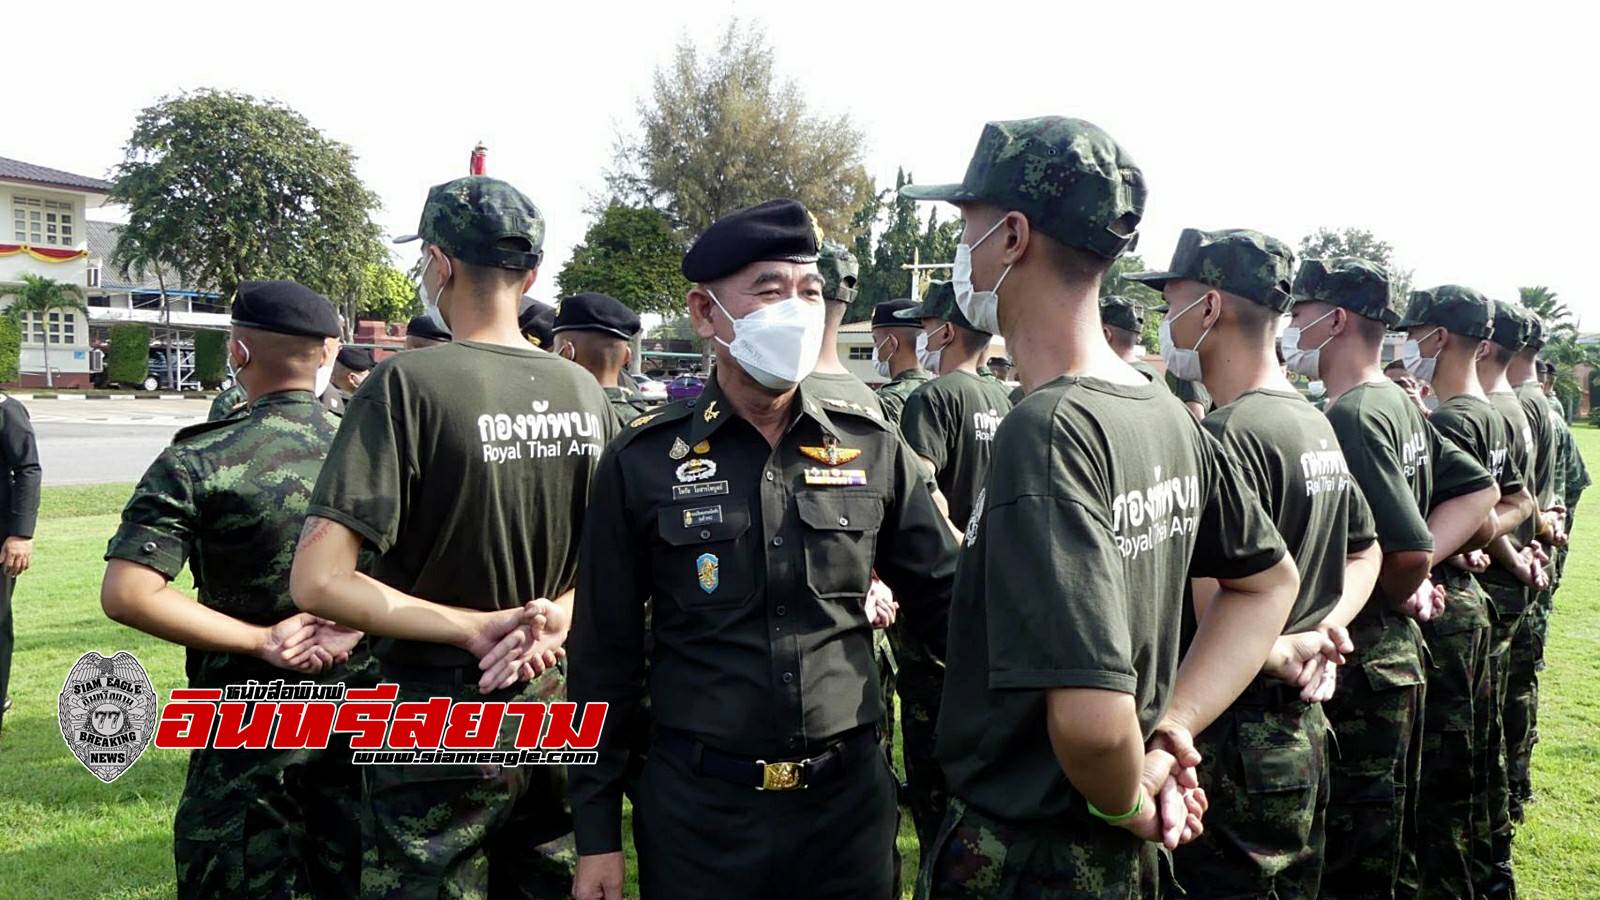 ราชบุรี-ทหารช่าง เปิดบ้านต้อนรับทหารใหม่ผลัดที่ 2 ลั่นดูแลเหมือนญาติ